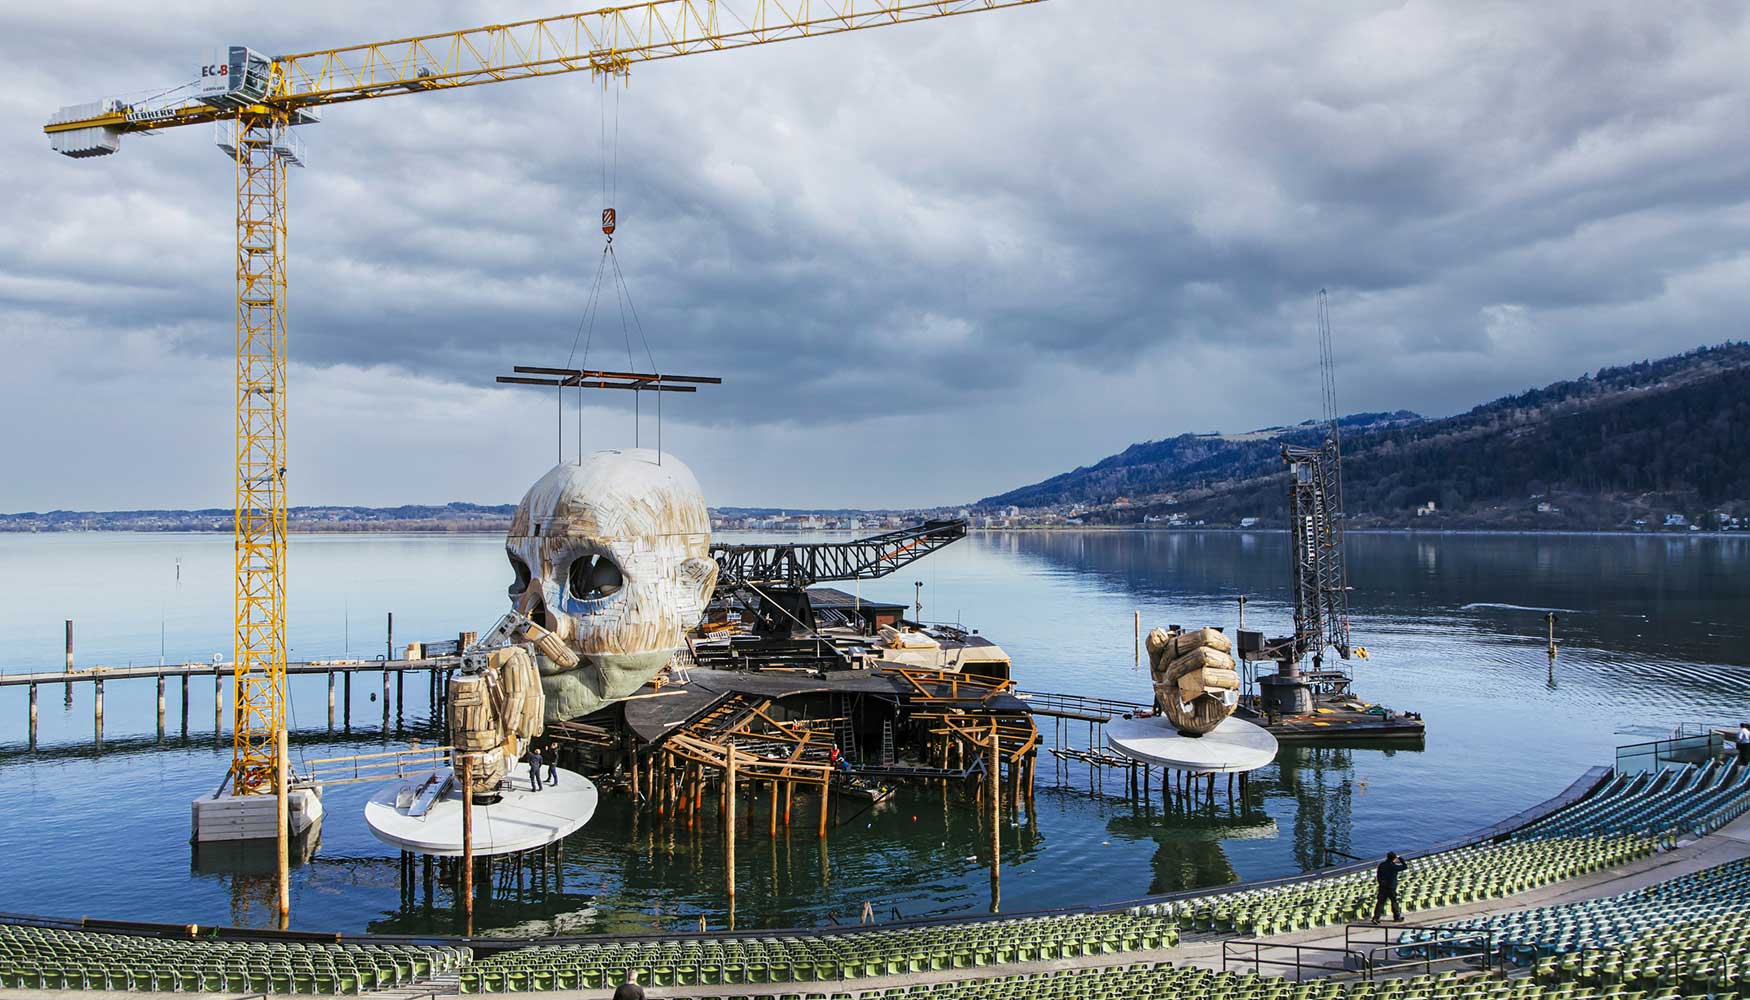 Con una 150 EC-B, montada en el pie de anclaje del lago de Constanza, se desmont la escenografa del escenario del lago de Bregenz...